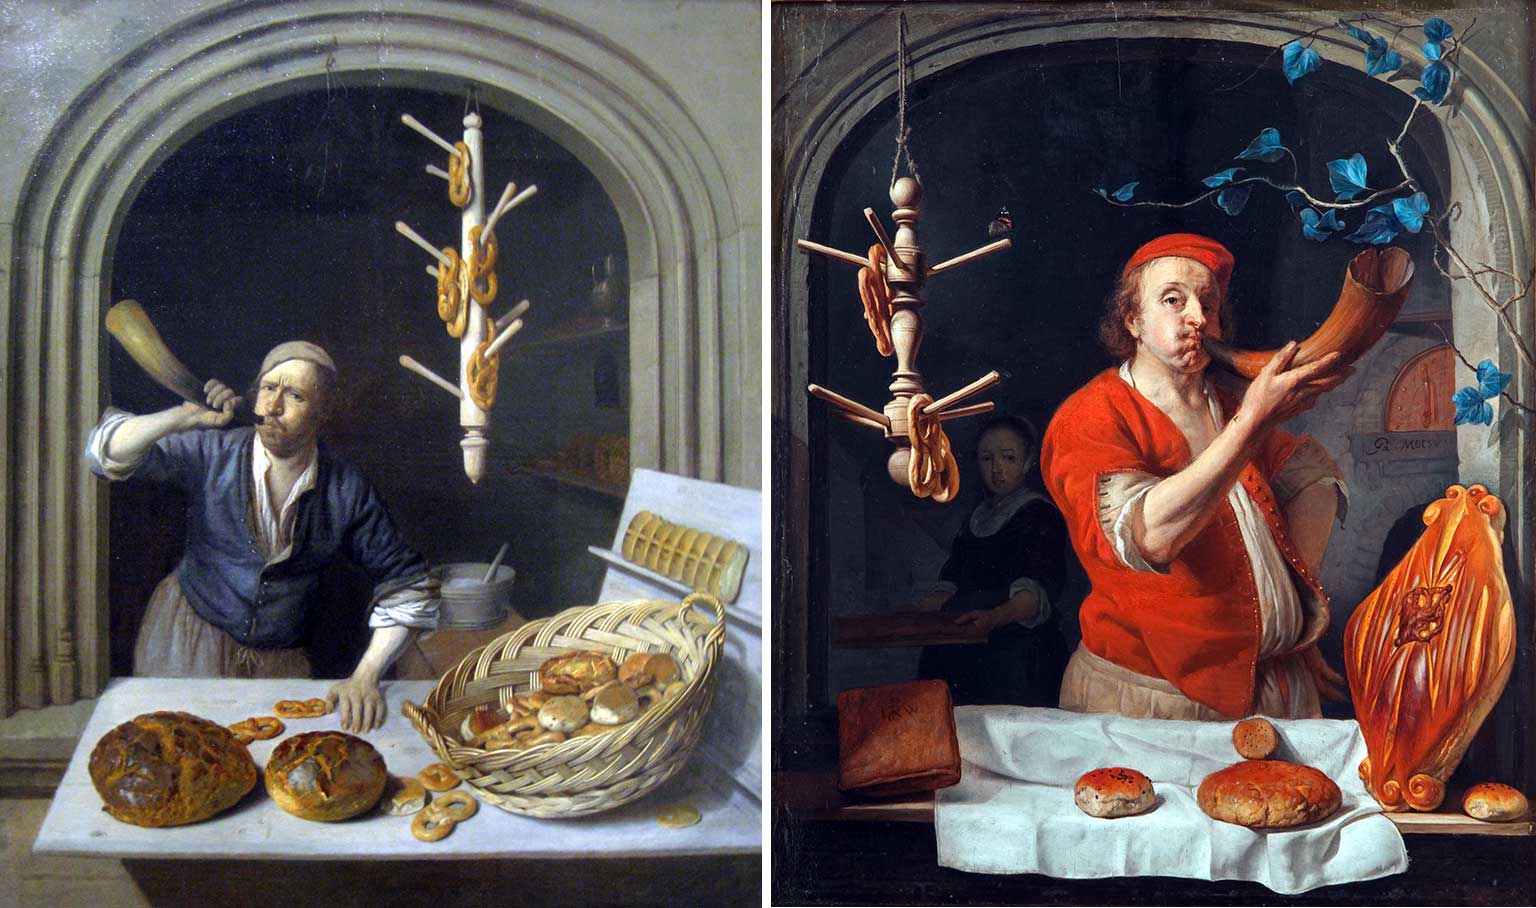 The Baker, painting by Job Adriaensz Berckheyde and Baker Blowing his Horn, painting by Gabriël Metsu